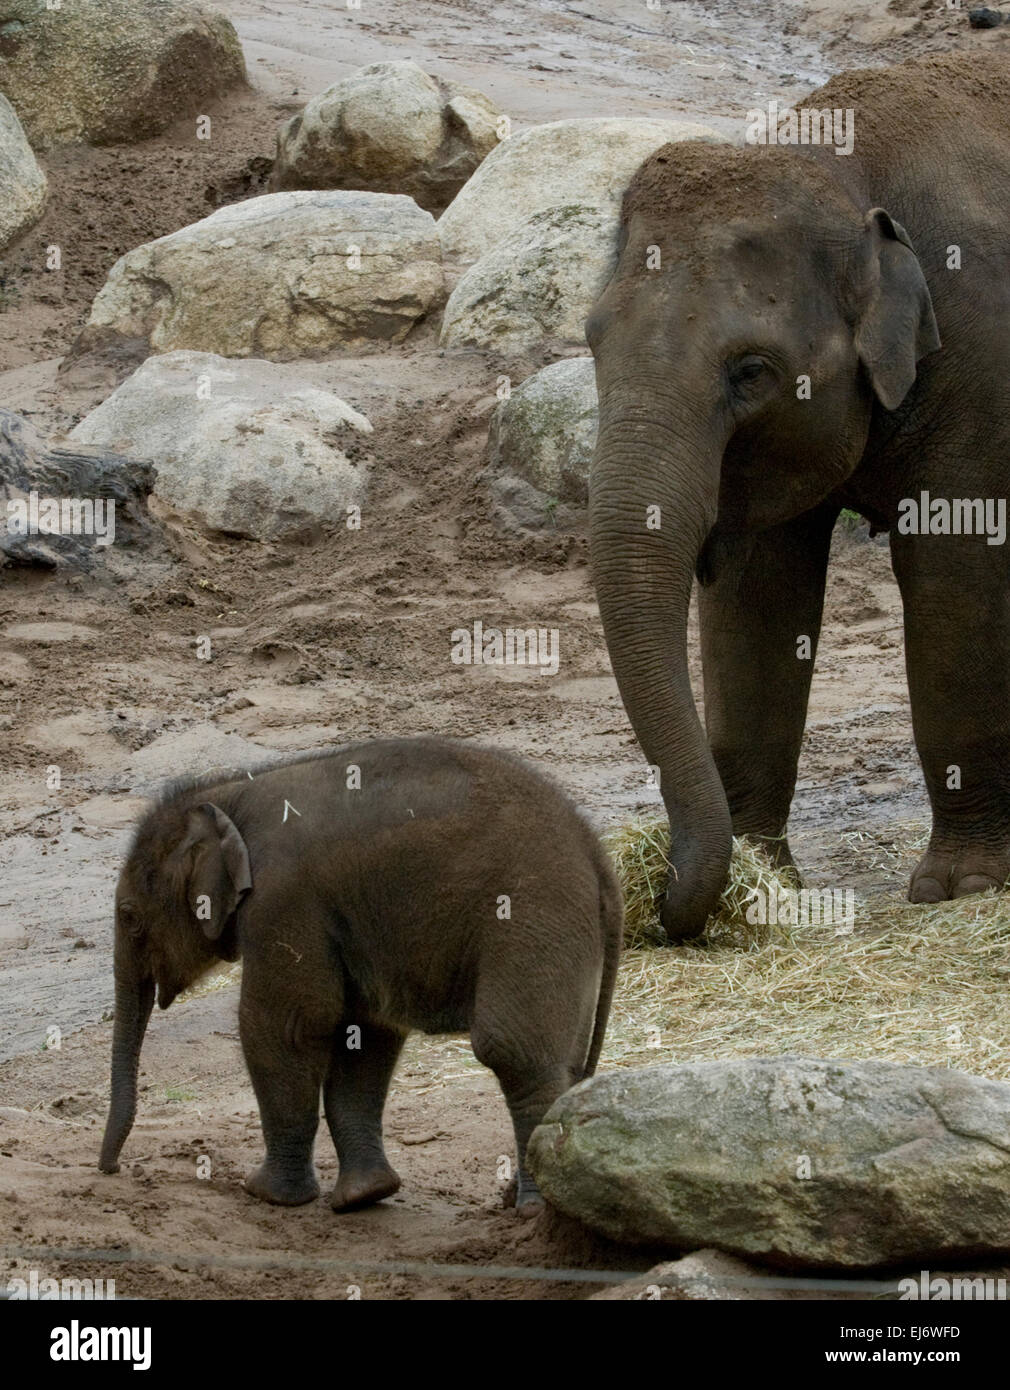 'Mali' femelle bébé de 9 mois, sur l'éléphant d'Asie montrent avec okkoon "mère" (L) et 'aunti Num oi' (R) au zoo de Melbourne. Banque D'Images